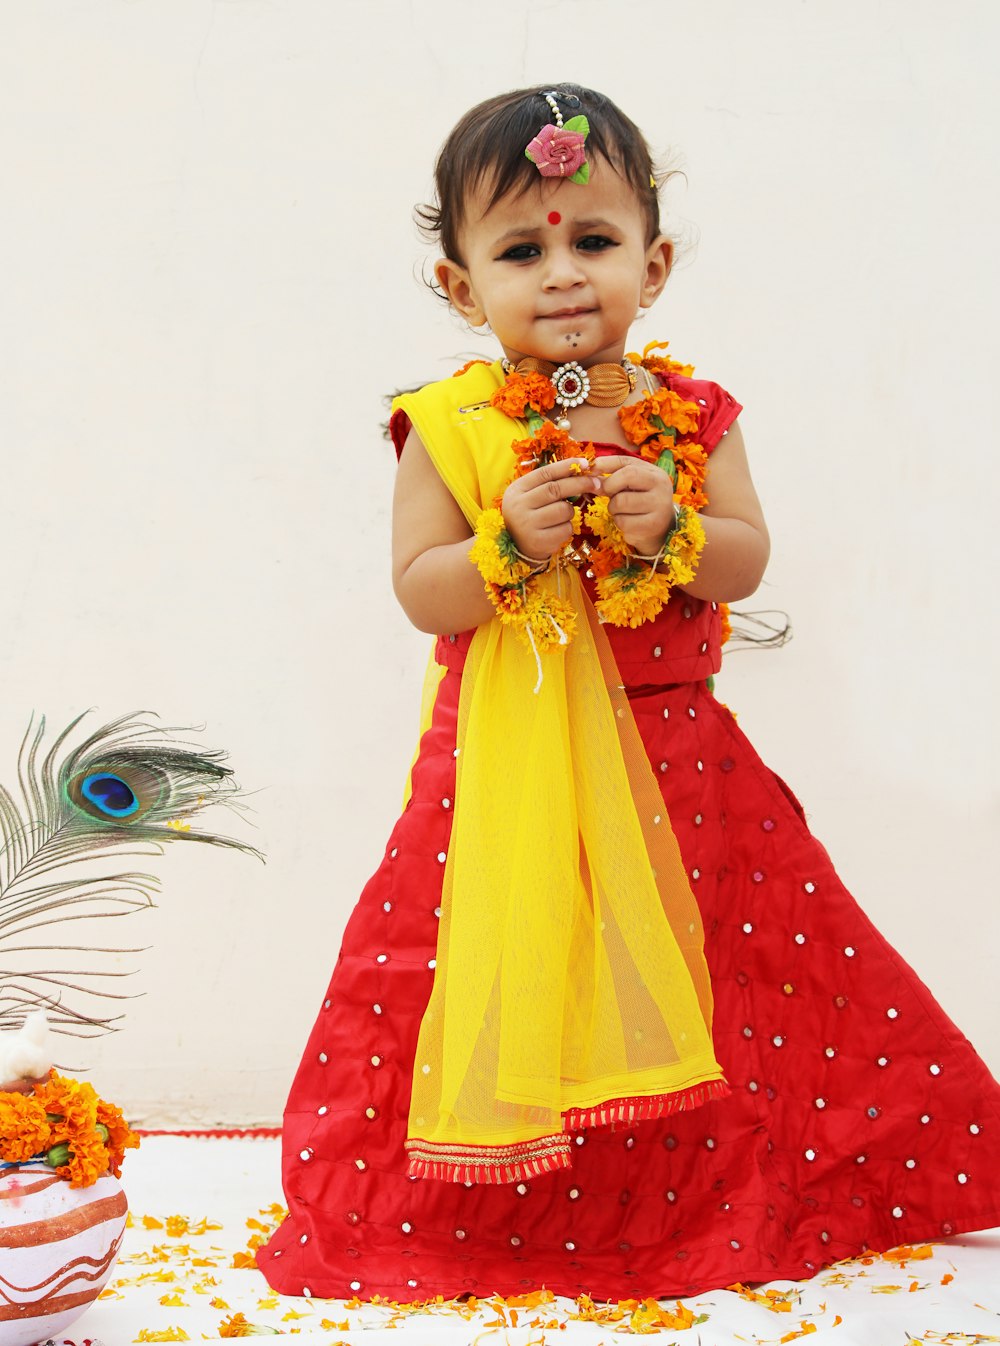 muchacha en vestido rojo y amarillo sosteniendo ramo de flores amarillas